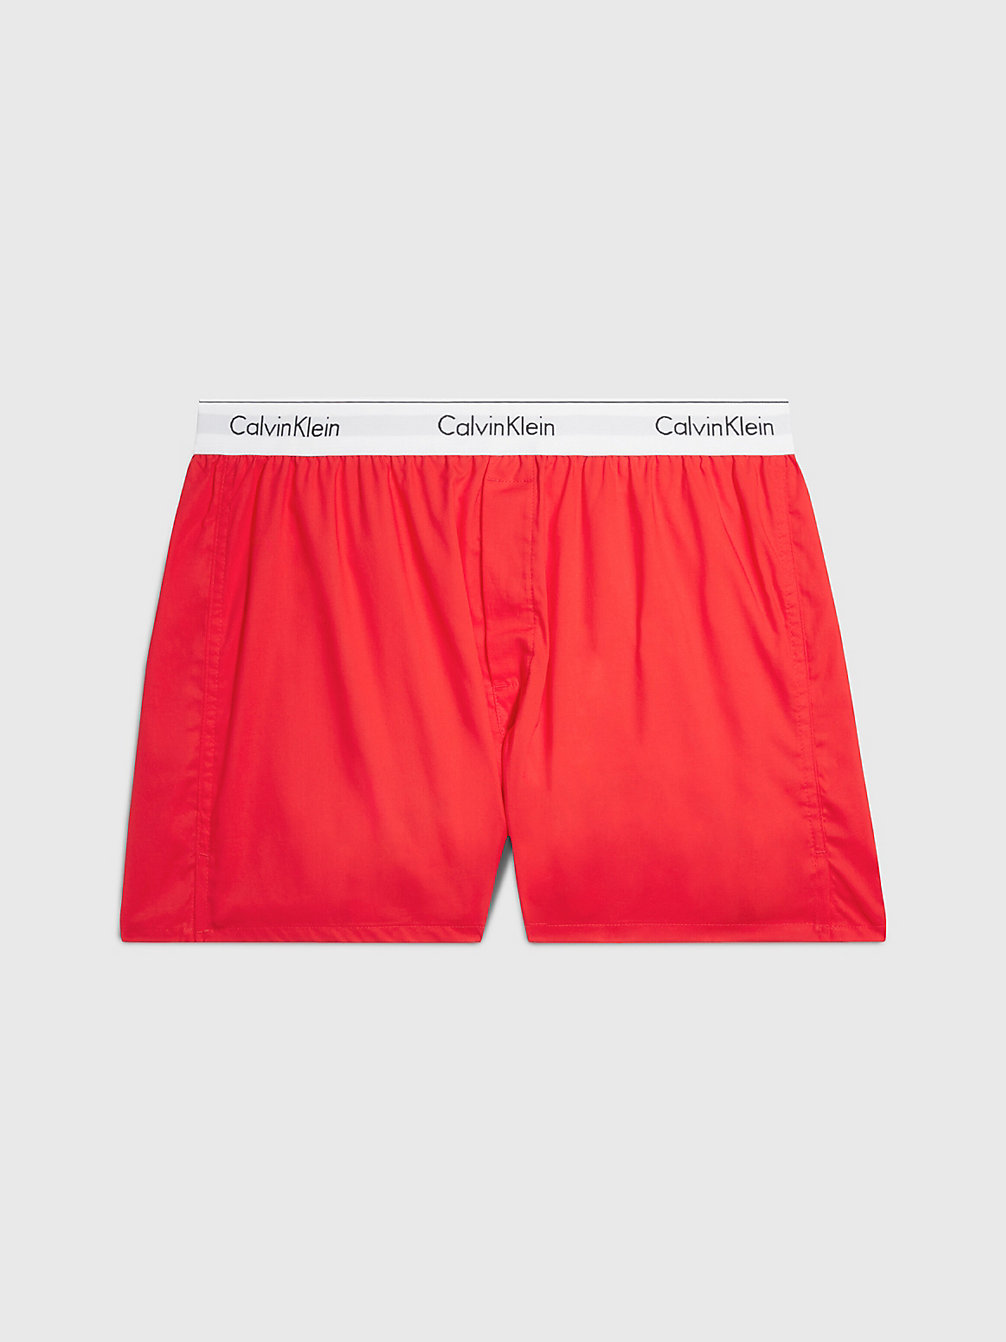 ORANGE ODYSSEY Slim Fit Boxers - Modern Cotton undefined men Calvin Klein